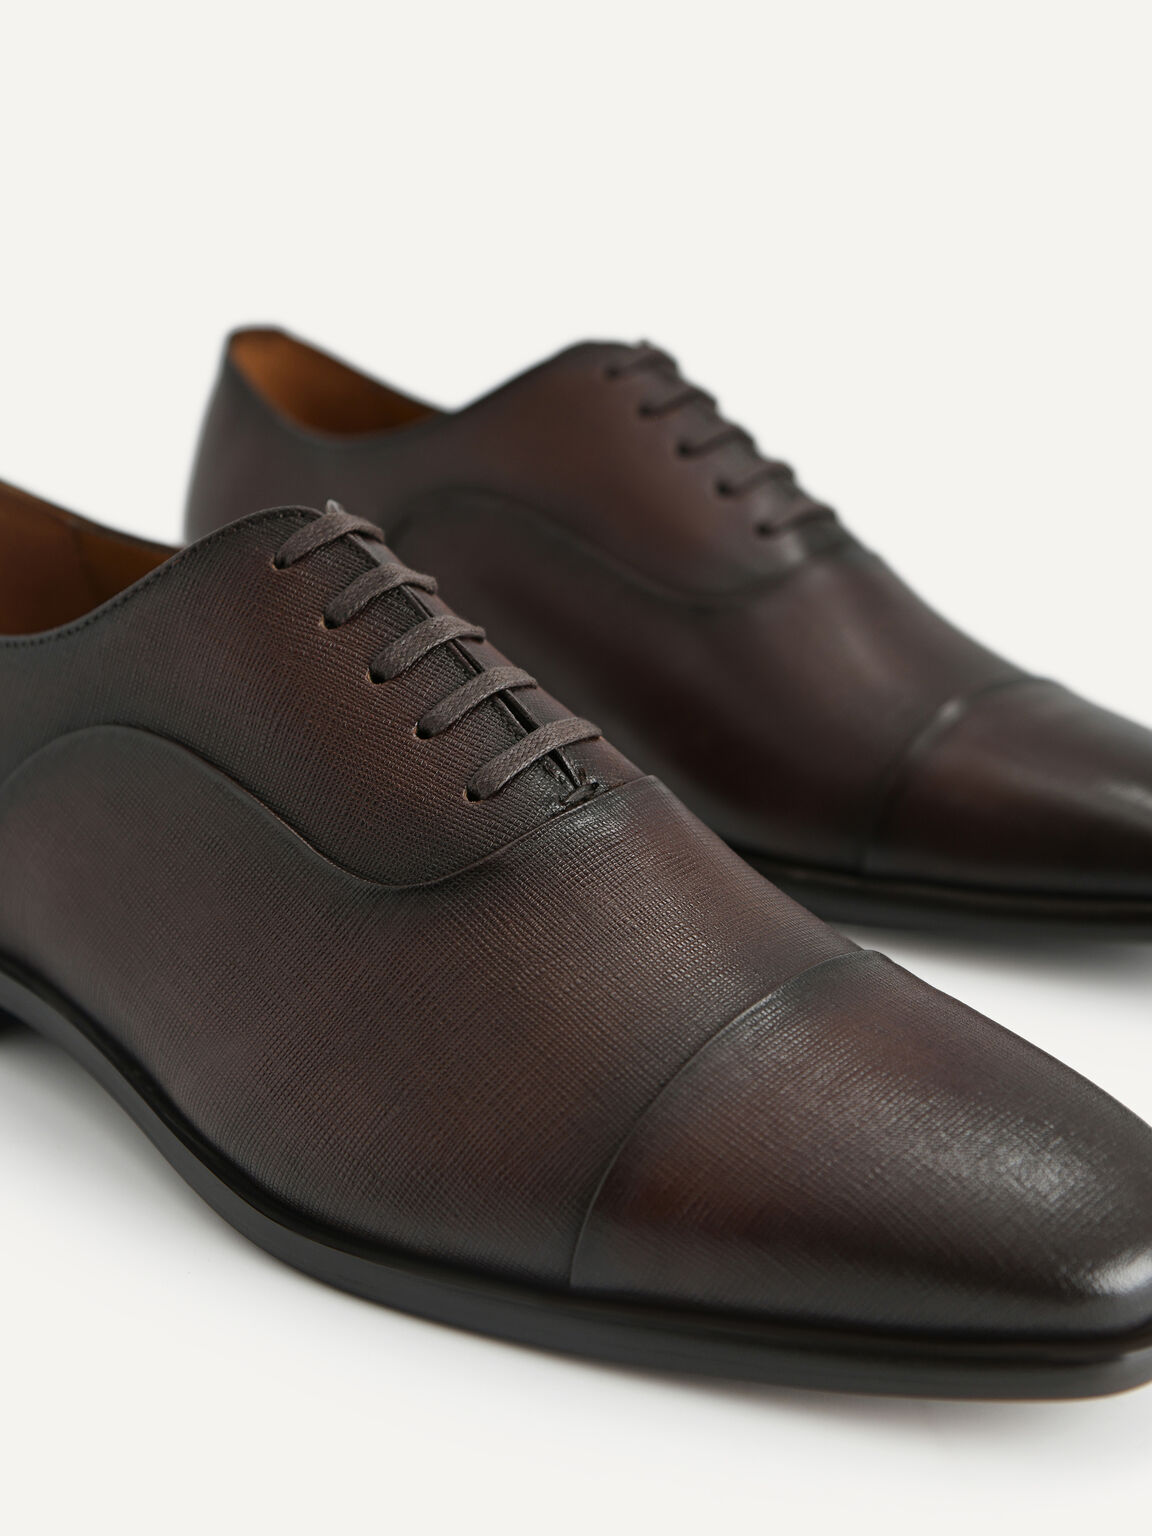 紋理皮革牛津鞋, 棕色, hi-res